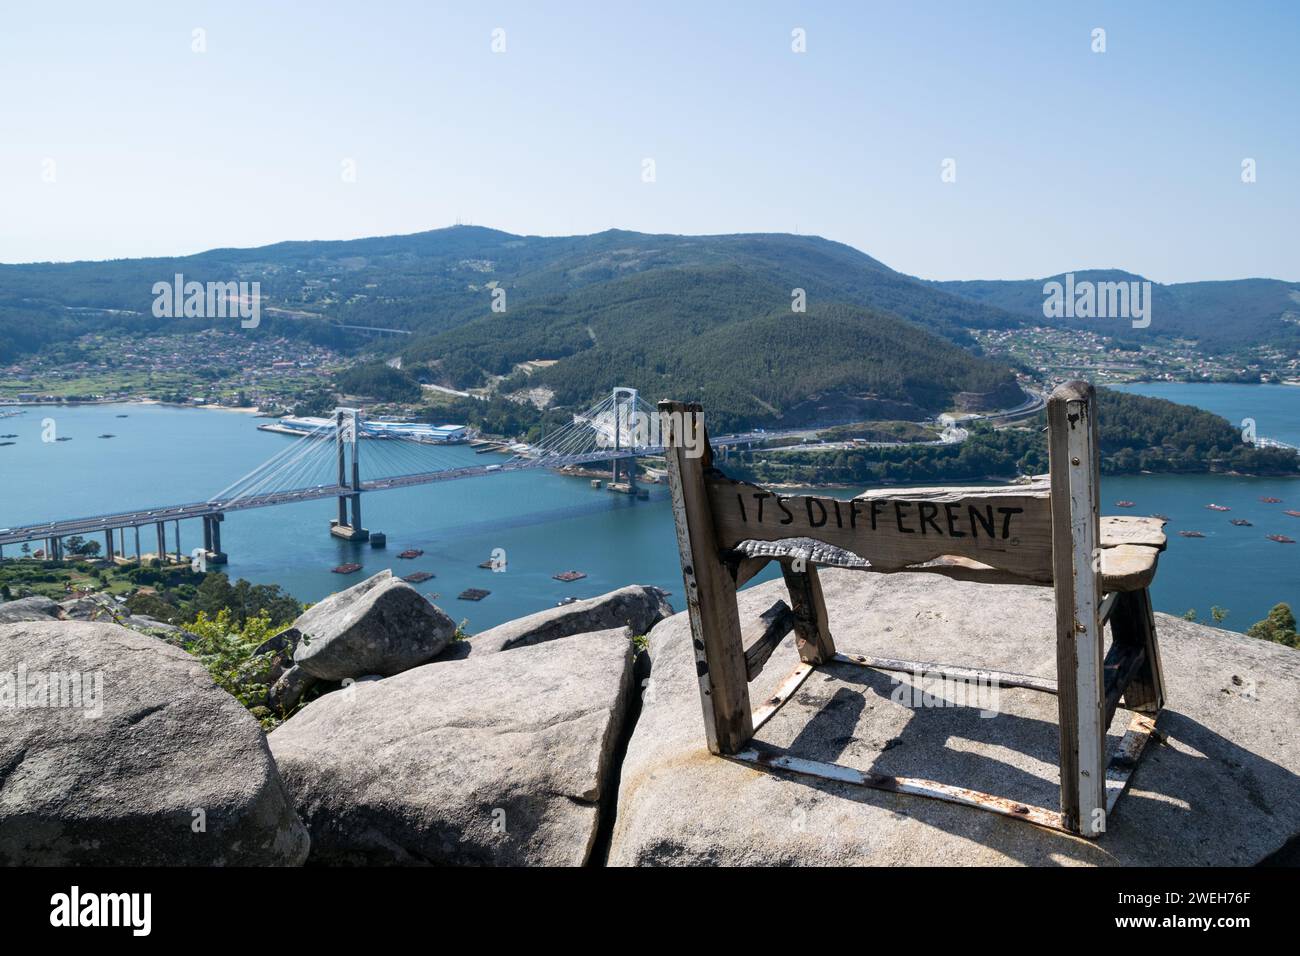 Vista de uno de los llamados mejores bancos del mundo en Vigo - España Foto de stock